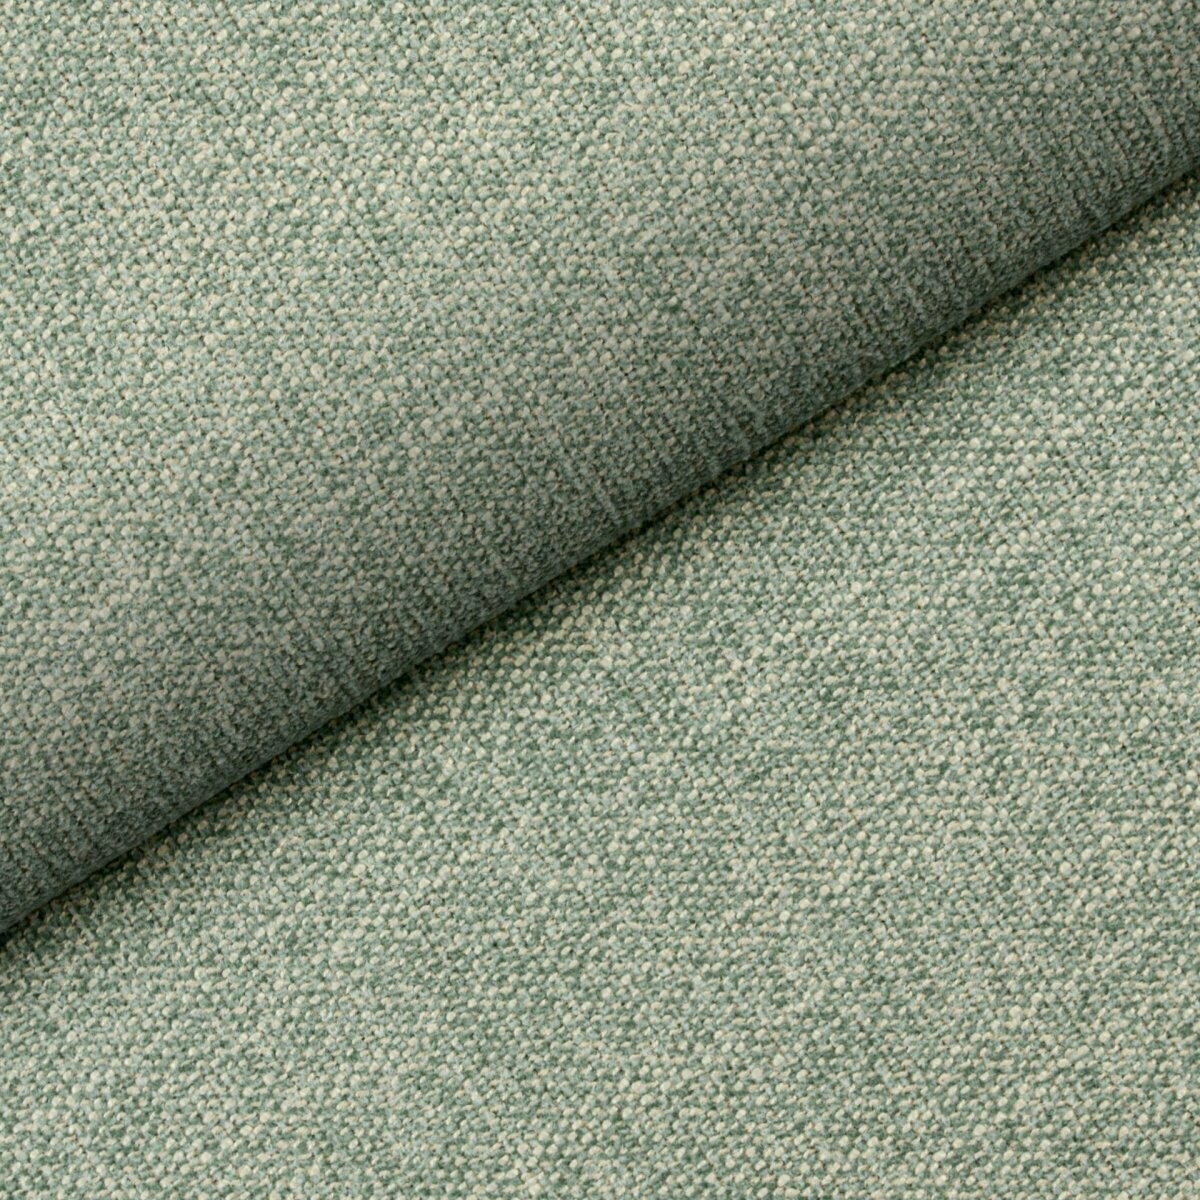 Jasno zielona tkanina Tulia 04 idealnie sprawdzi się w każdym wnętrzu. Ciekawa struktura, mocny splot, łatwo czyszcząca.